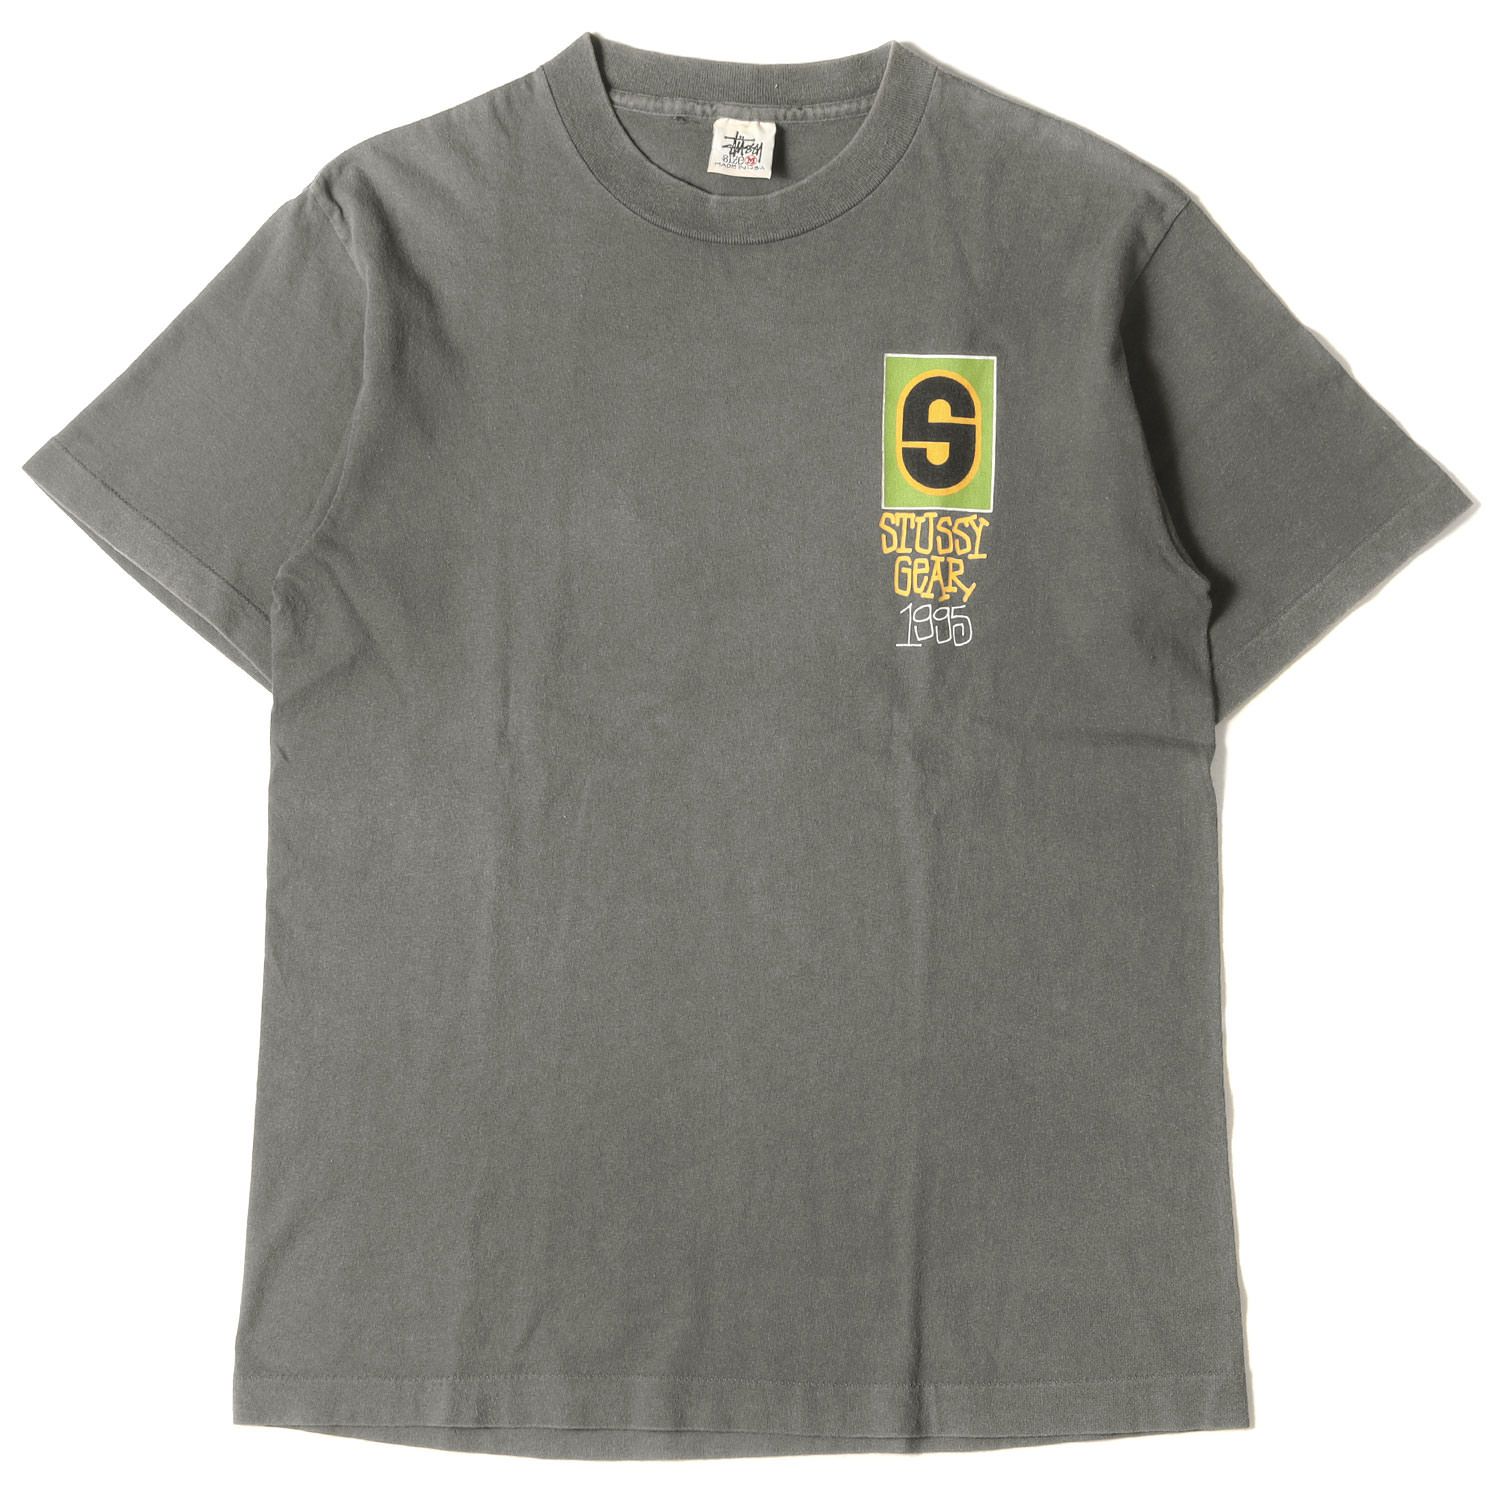 STUSSY ステューシー Tシャツ サイズ:M 90s OLD STUSSY 白タグ キー グラフィック クルーネック 半袖 Tシャツ USA製 グリーン トップス カットソー 90年代  【メンズ】